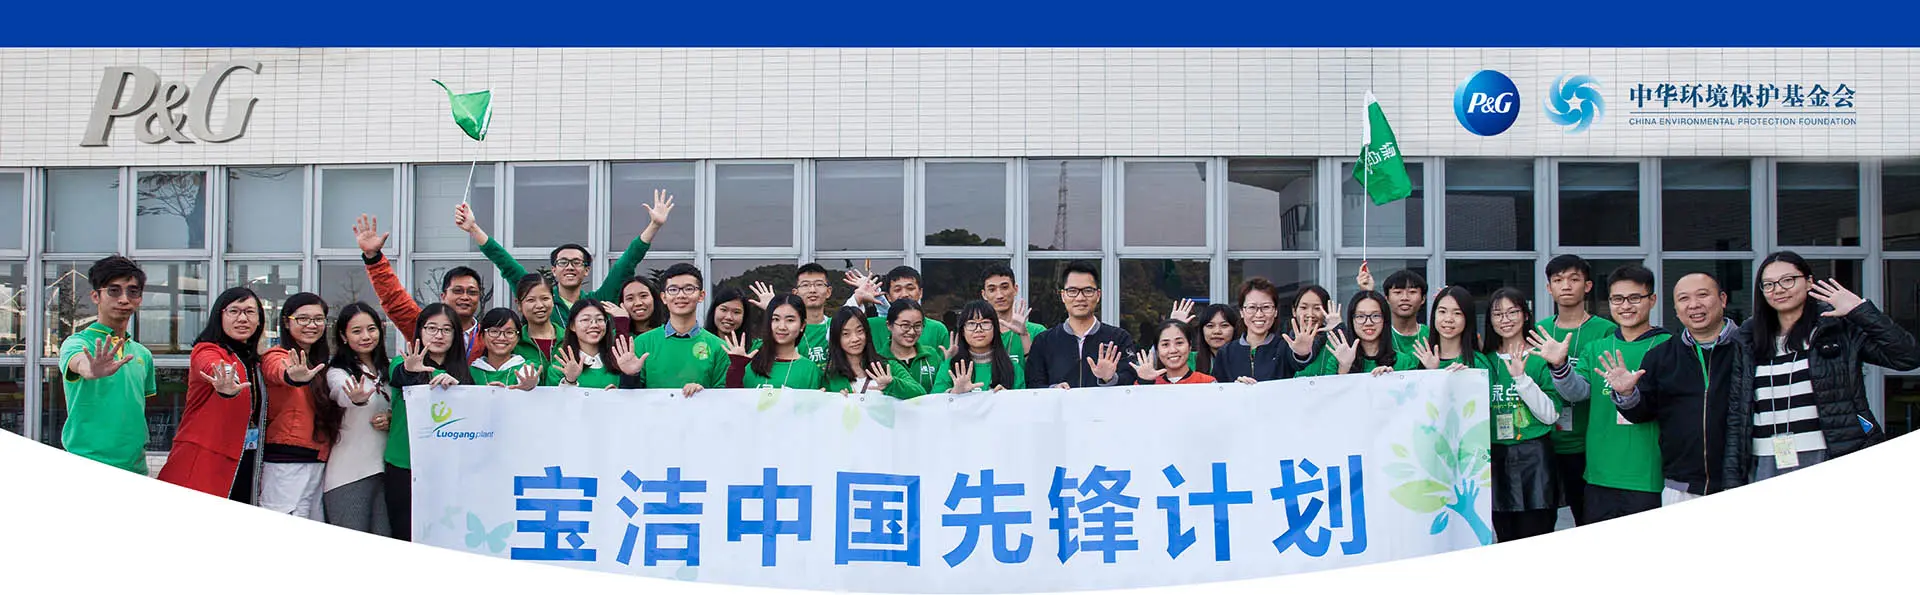 宝洁员工带领十余位先锋计划学生代表们参观宝洁广州萝岗工厂